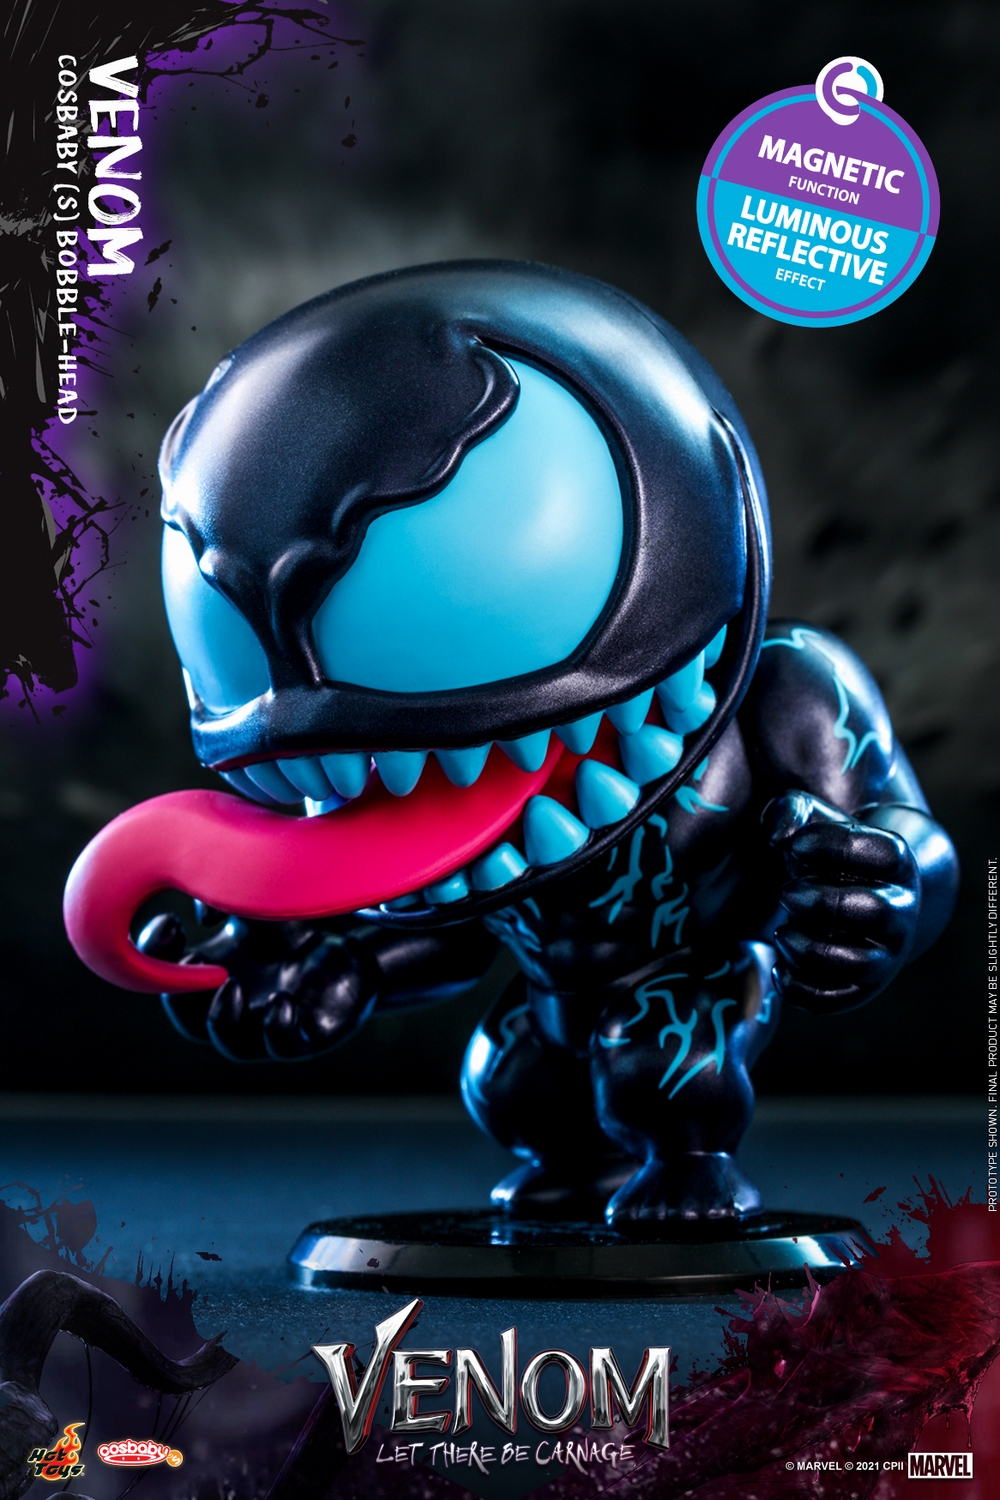 Hot Toys - Venom 2 - Venom Cosbaby_PR2.jpg